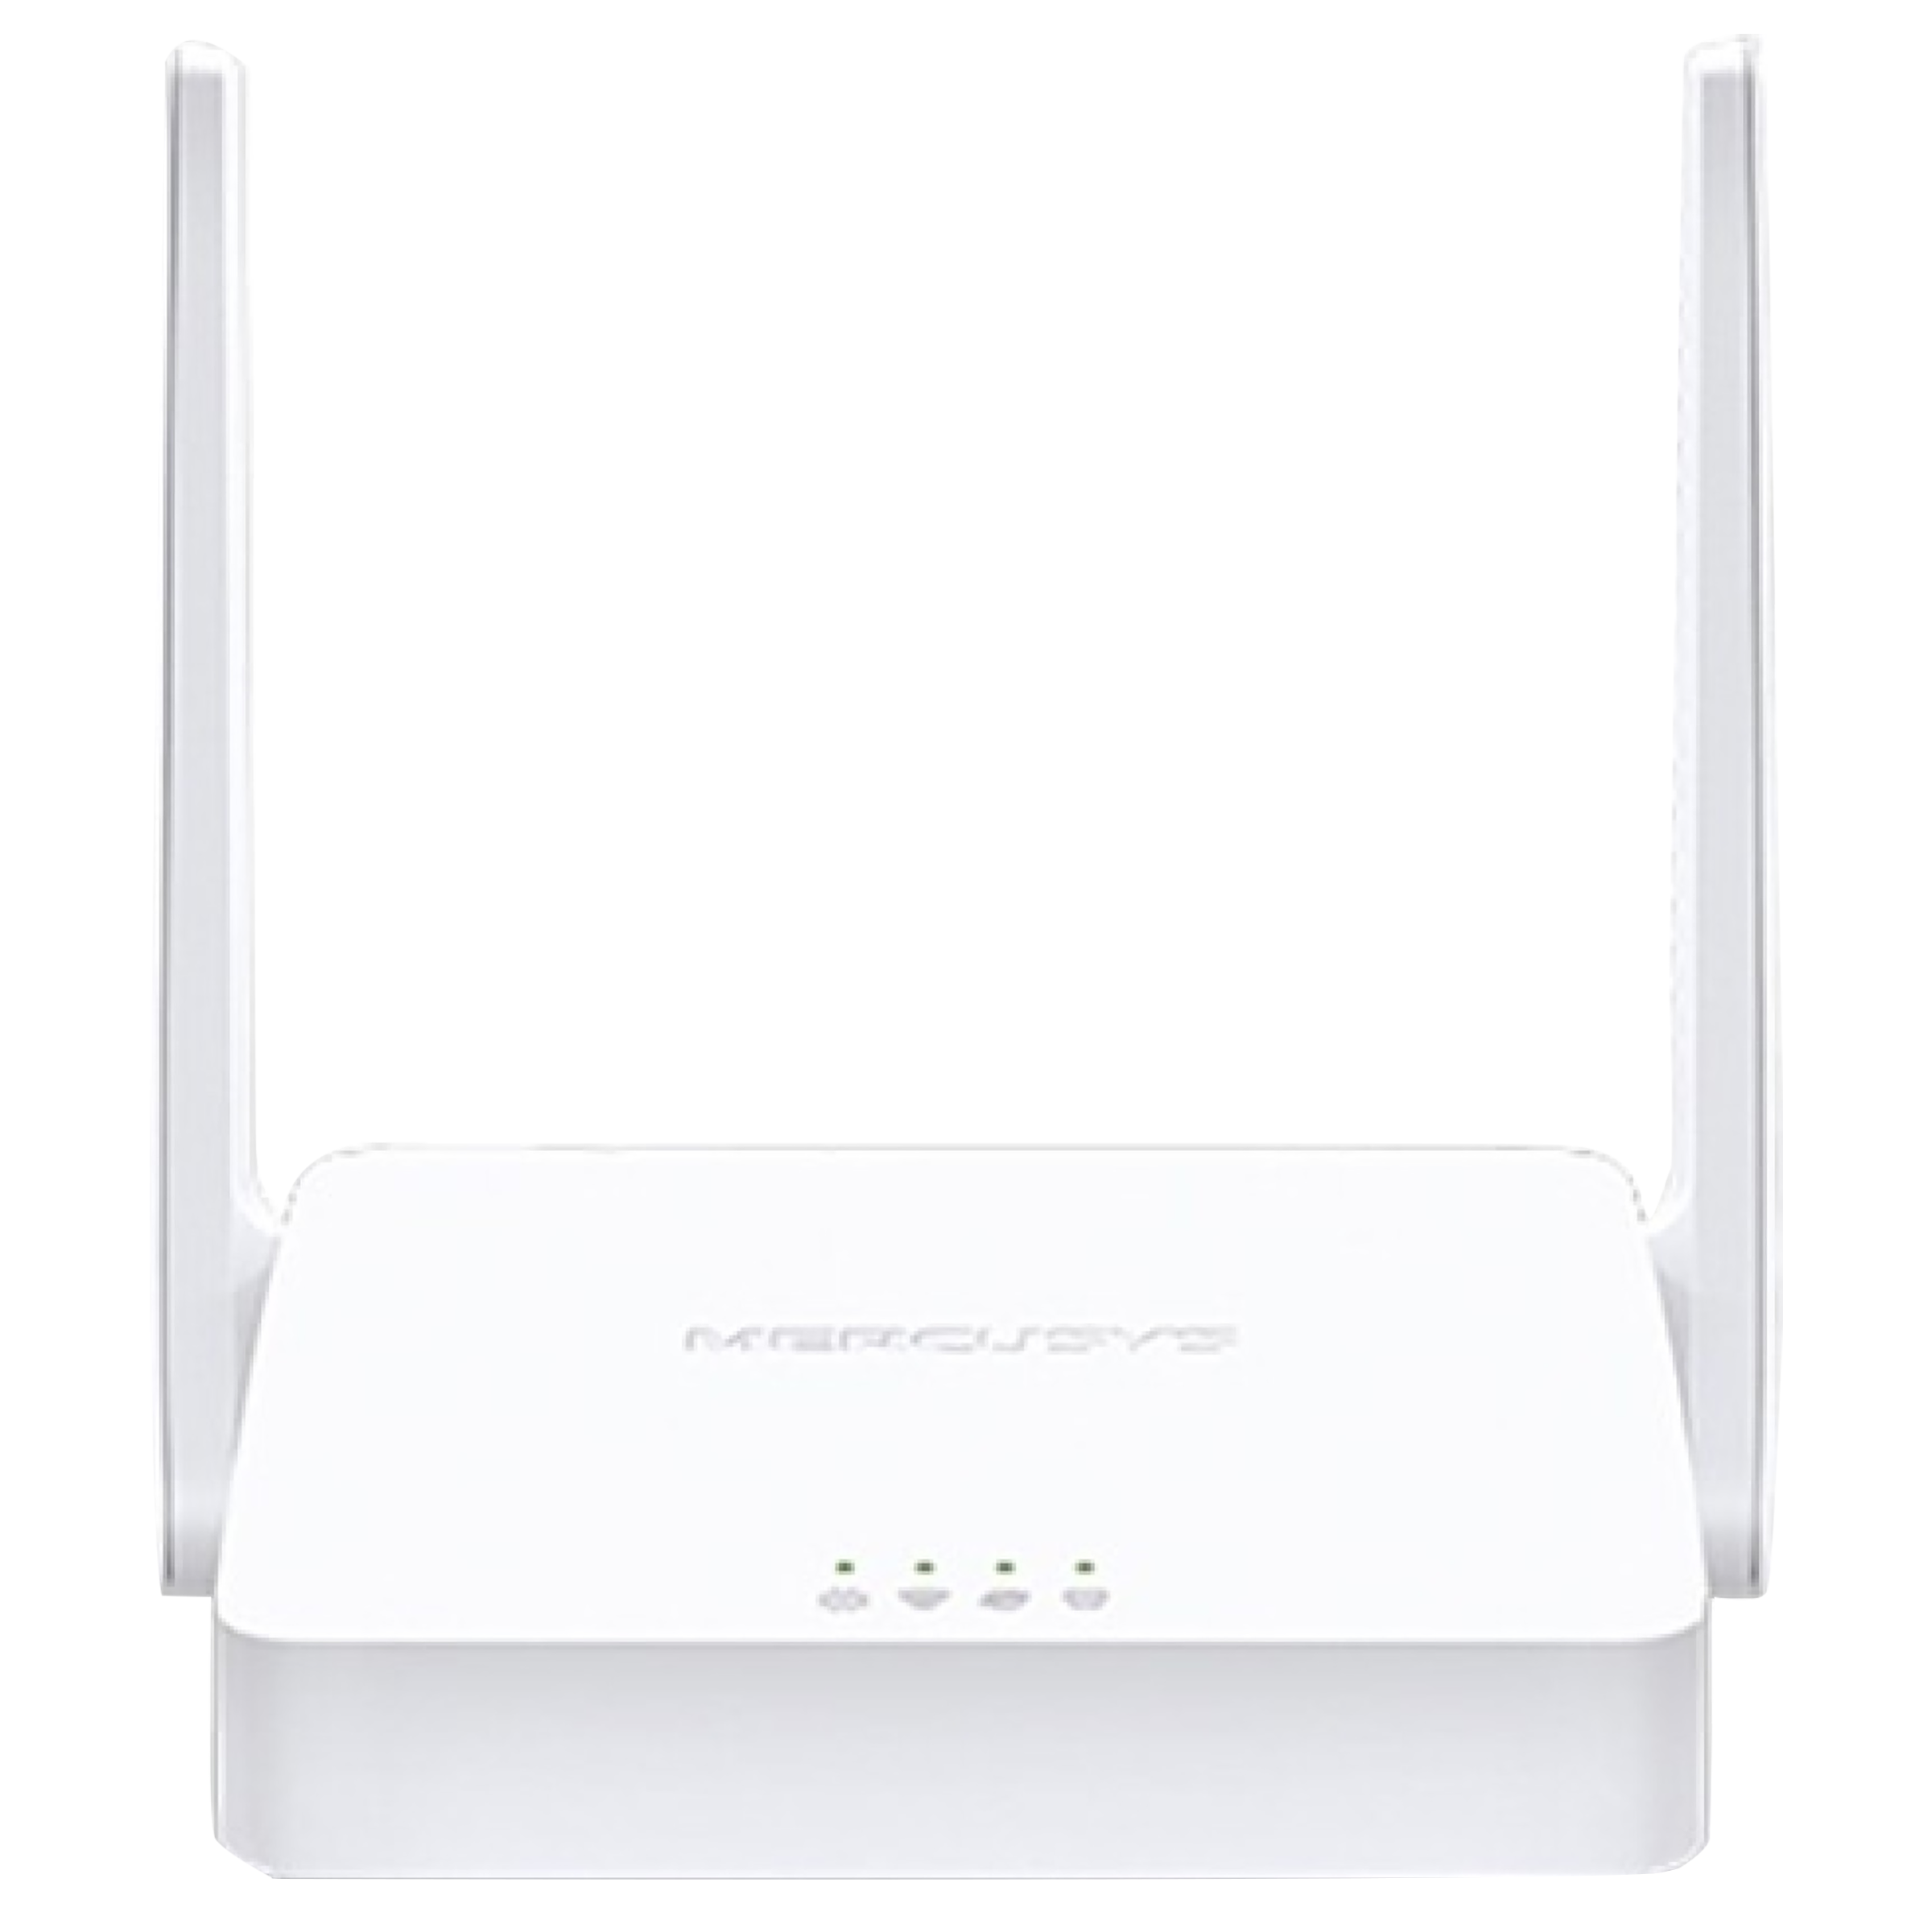 Mercusys MW301R-M 300 MbpsWi-Fi Router (2 Antennas, 2 LAN Ports, White)_1